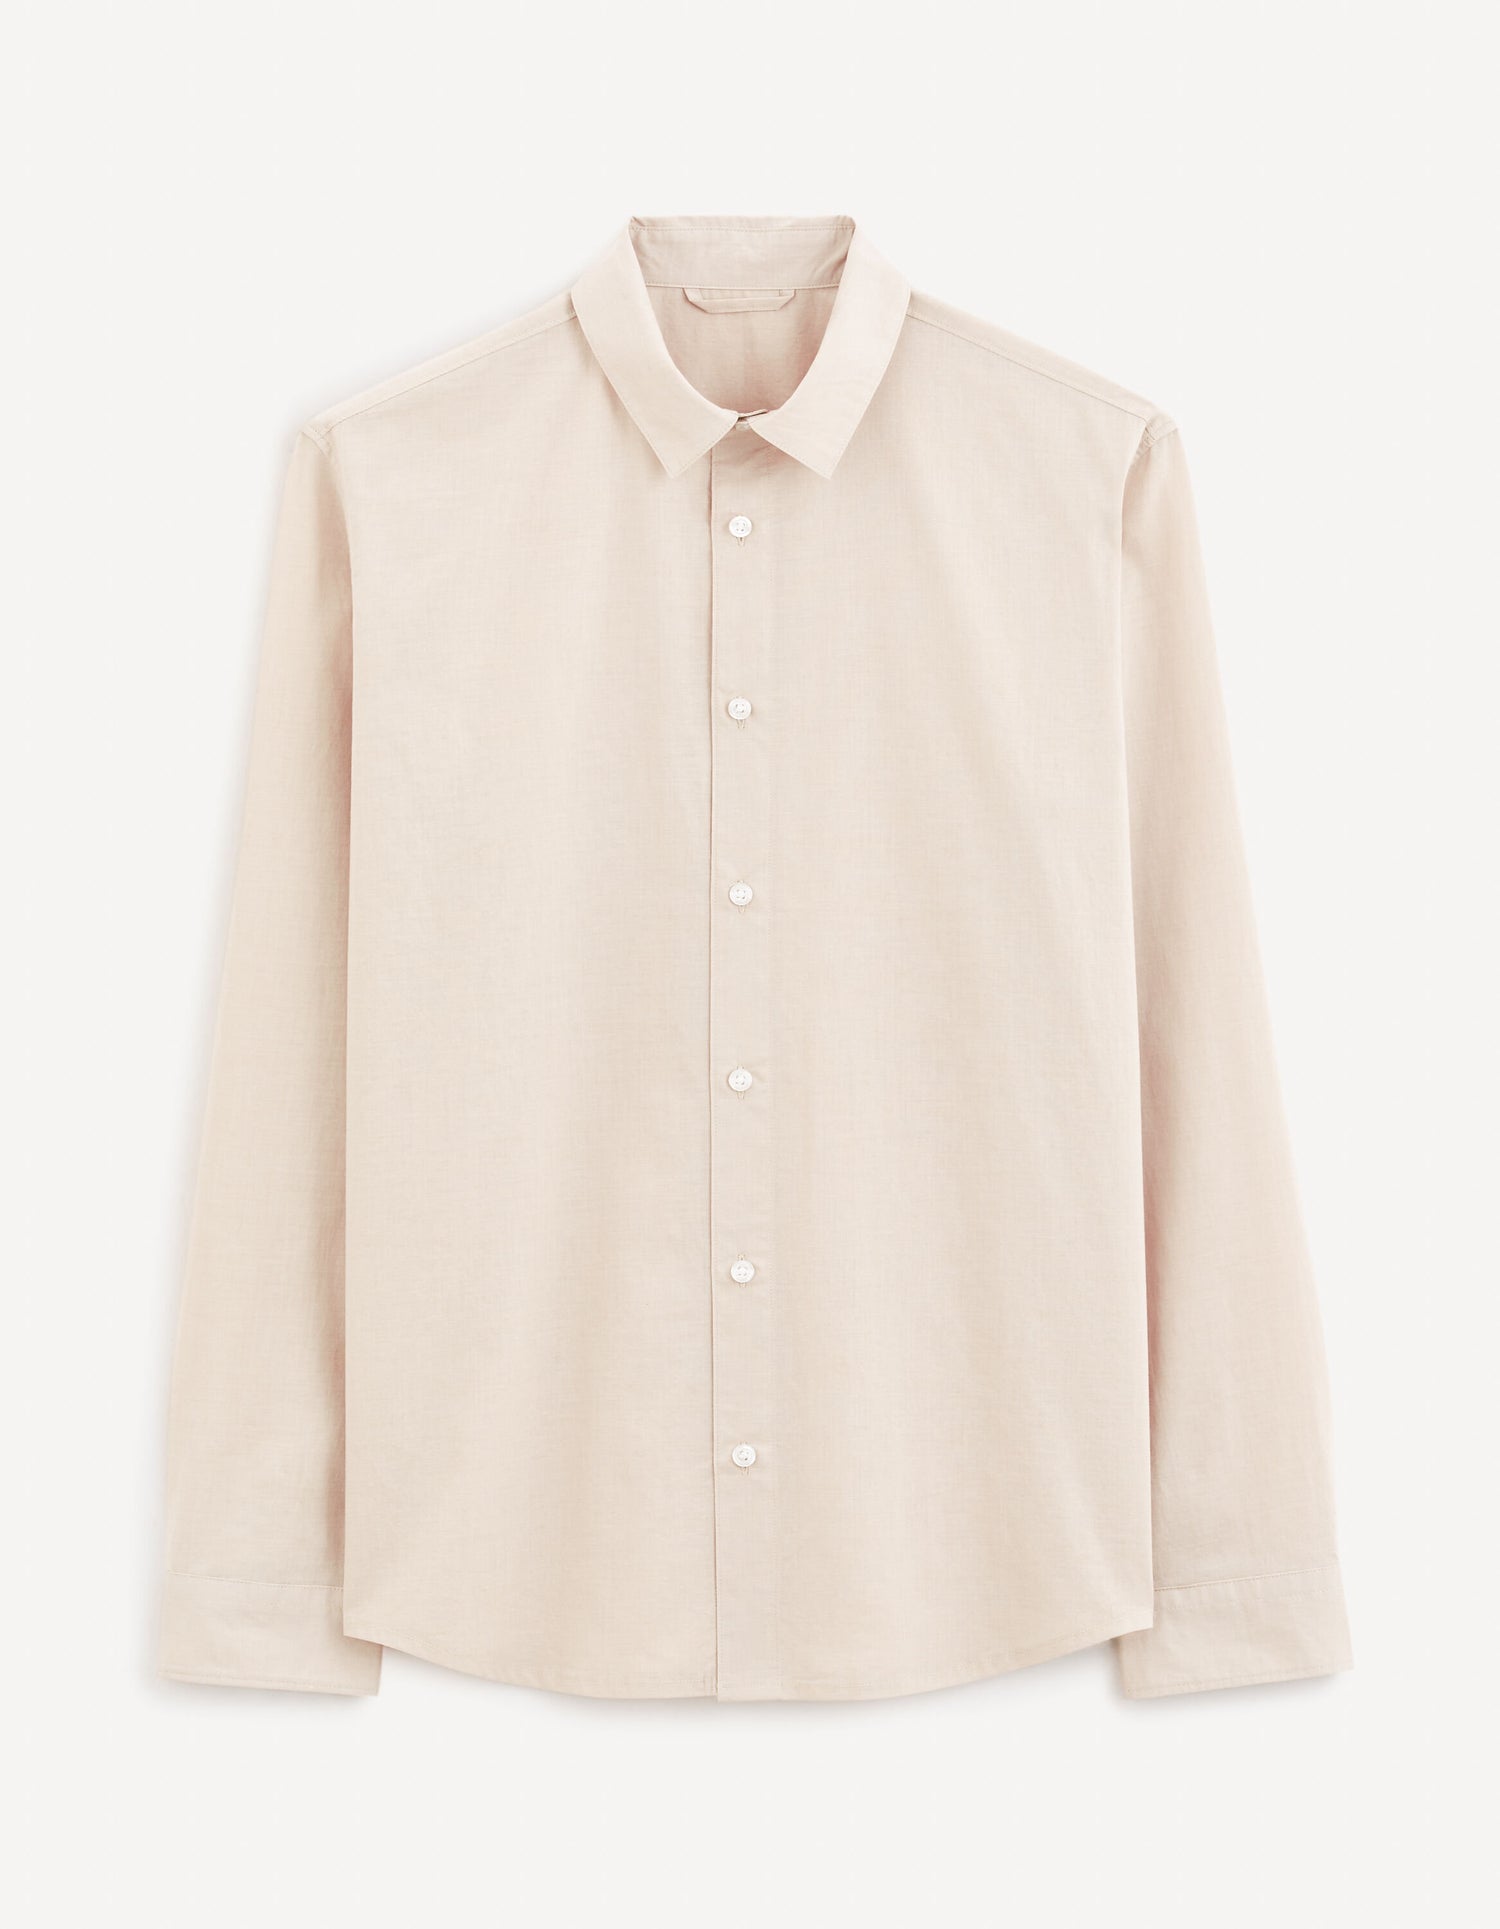 Regular Shirt 100% Cotton - Beige_FAMES_BEIGE_02